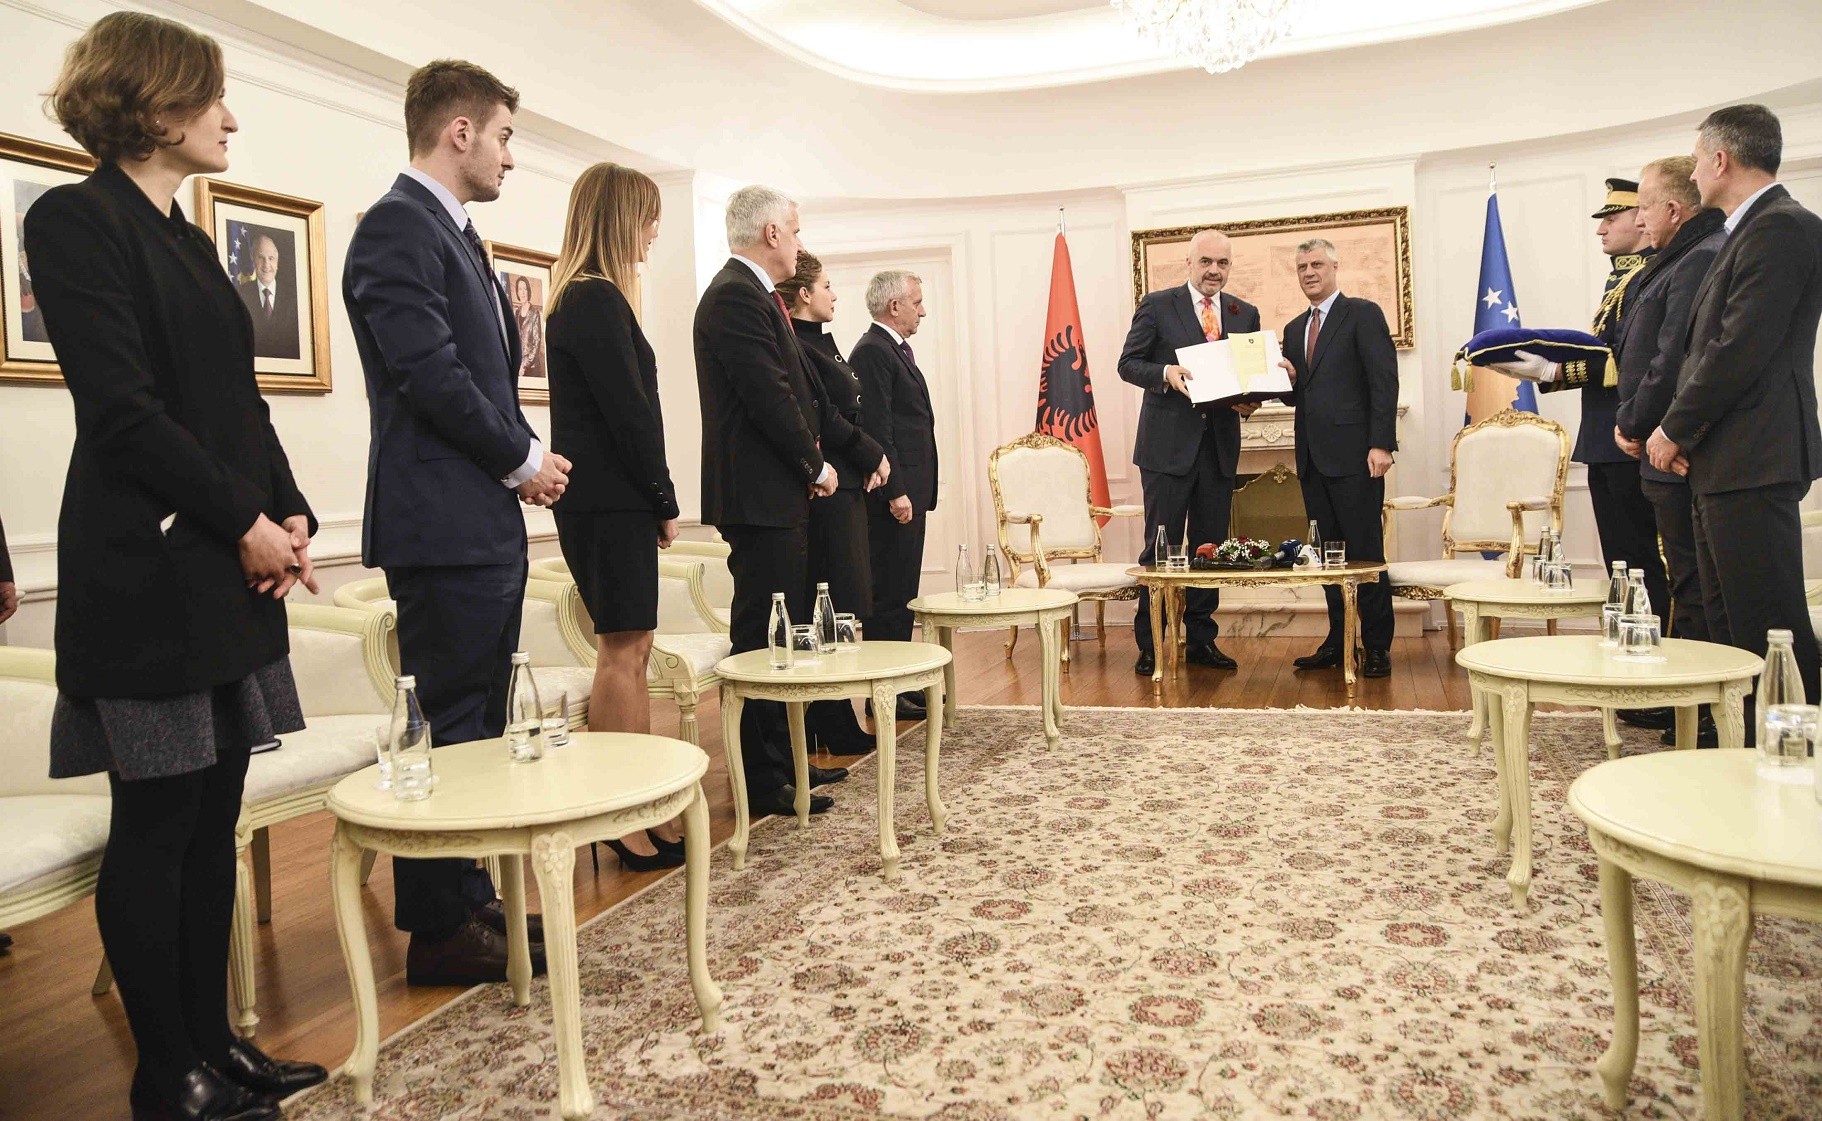 Presidenti Thaçi dekoron kryeministrin e Shqipërisë me medaljen presidenciale 